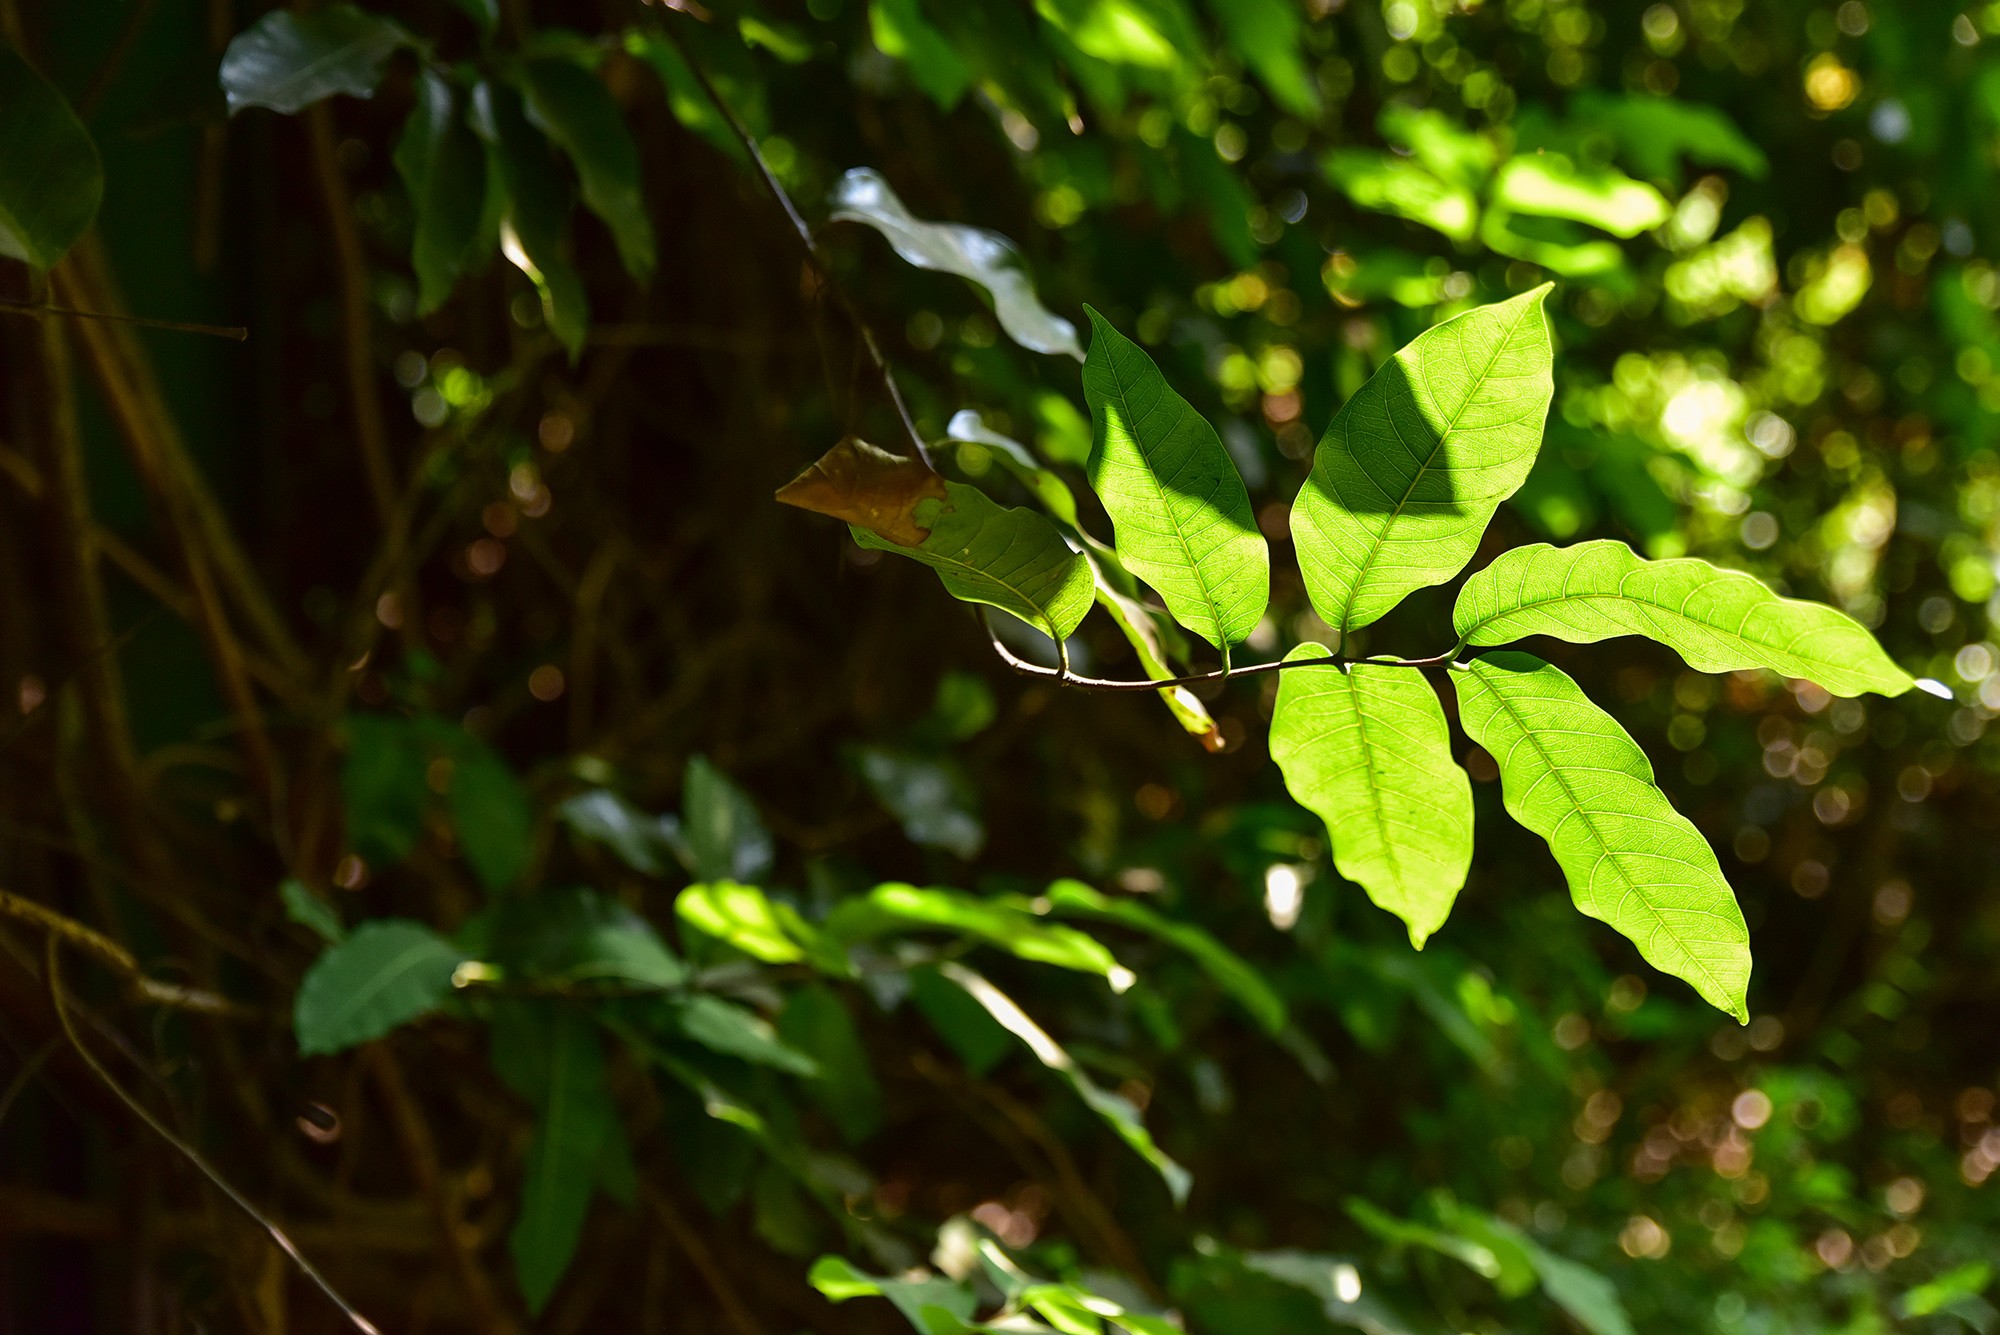 Lá cây phát triển xanh tốt chủ yếu ở phần ngọn vươn ra xa. Theo nhân viên sở thú, trái của cây khi chín có màu vàng nhạt và có vị chua.